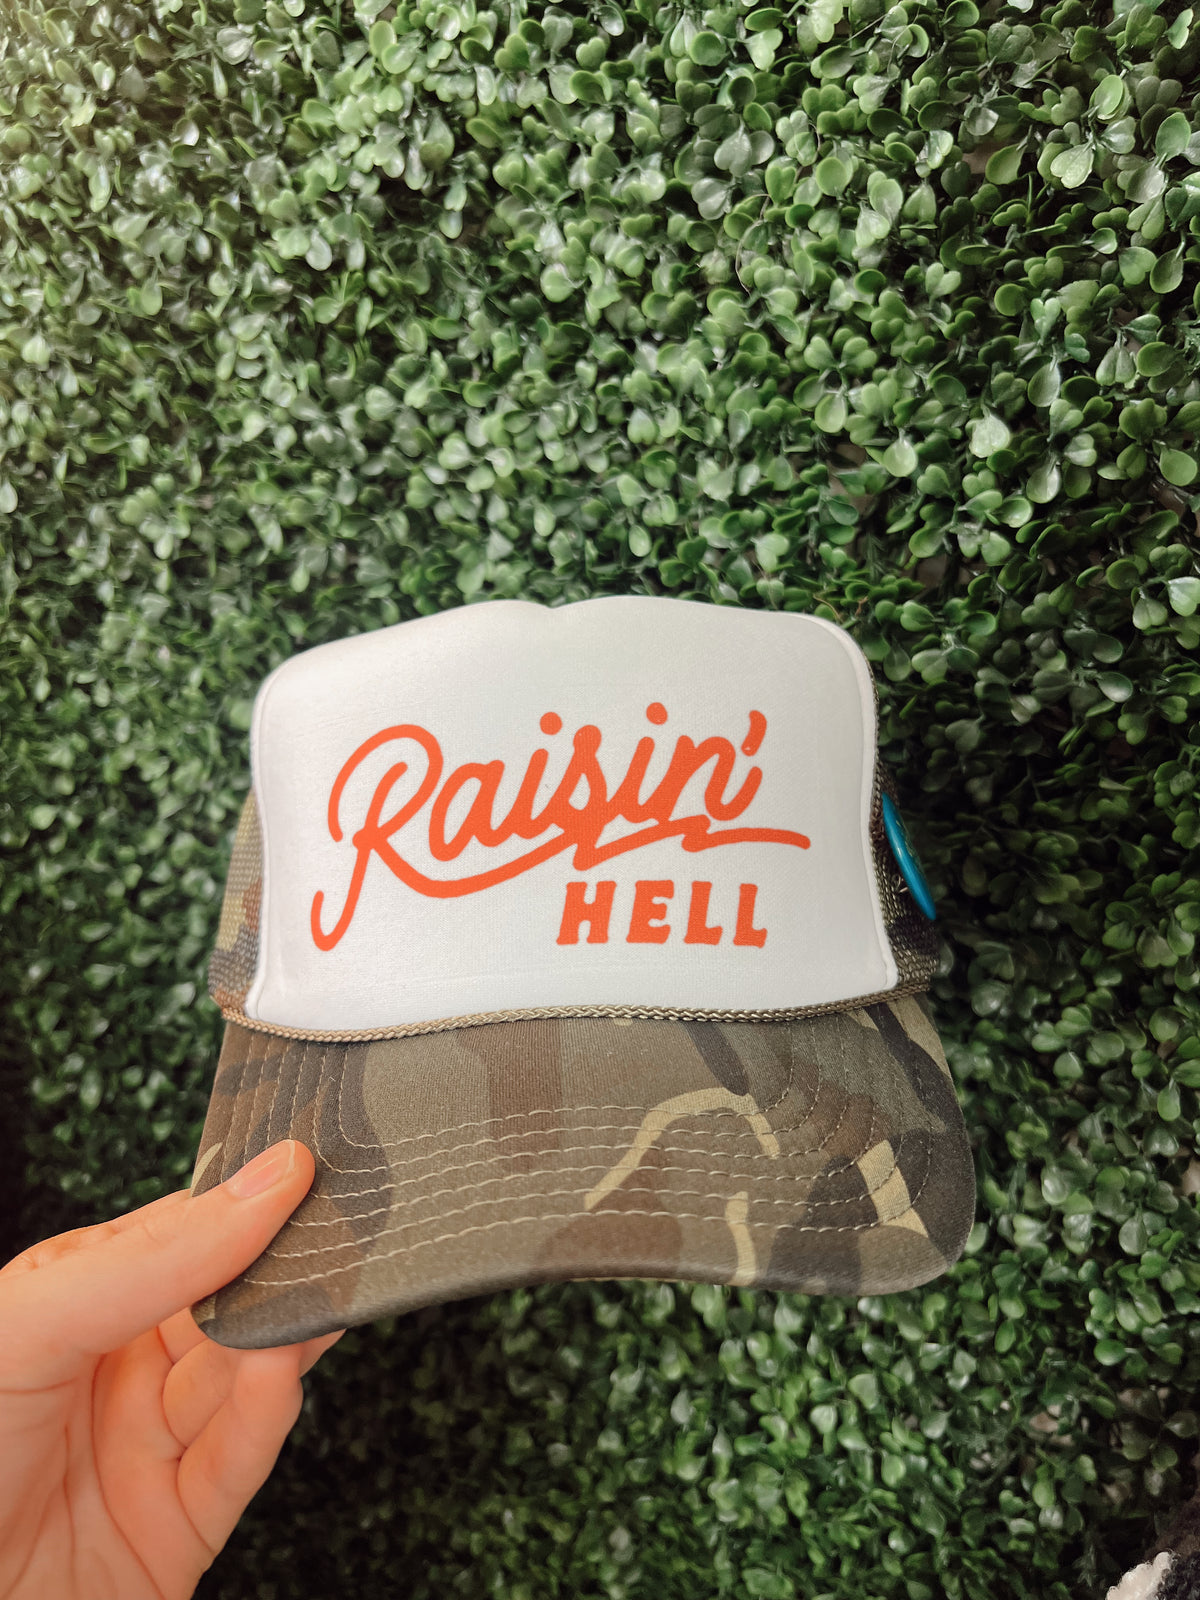 RAISIN' HELL TRUCKER HAT